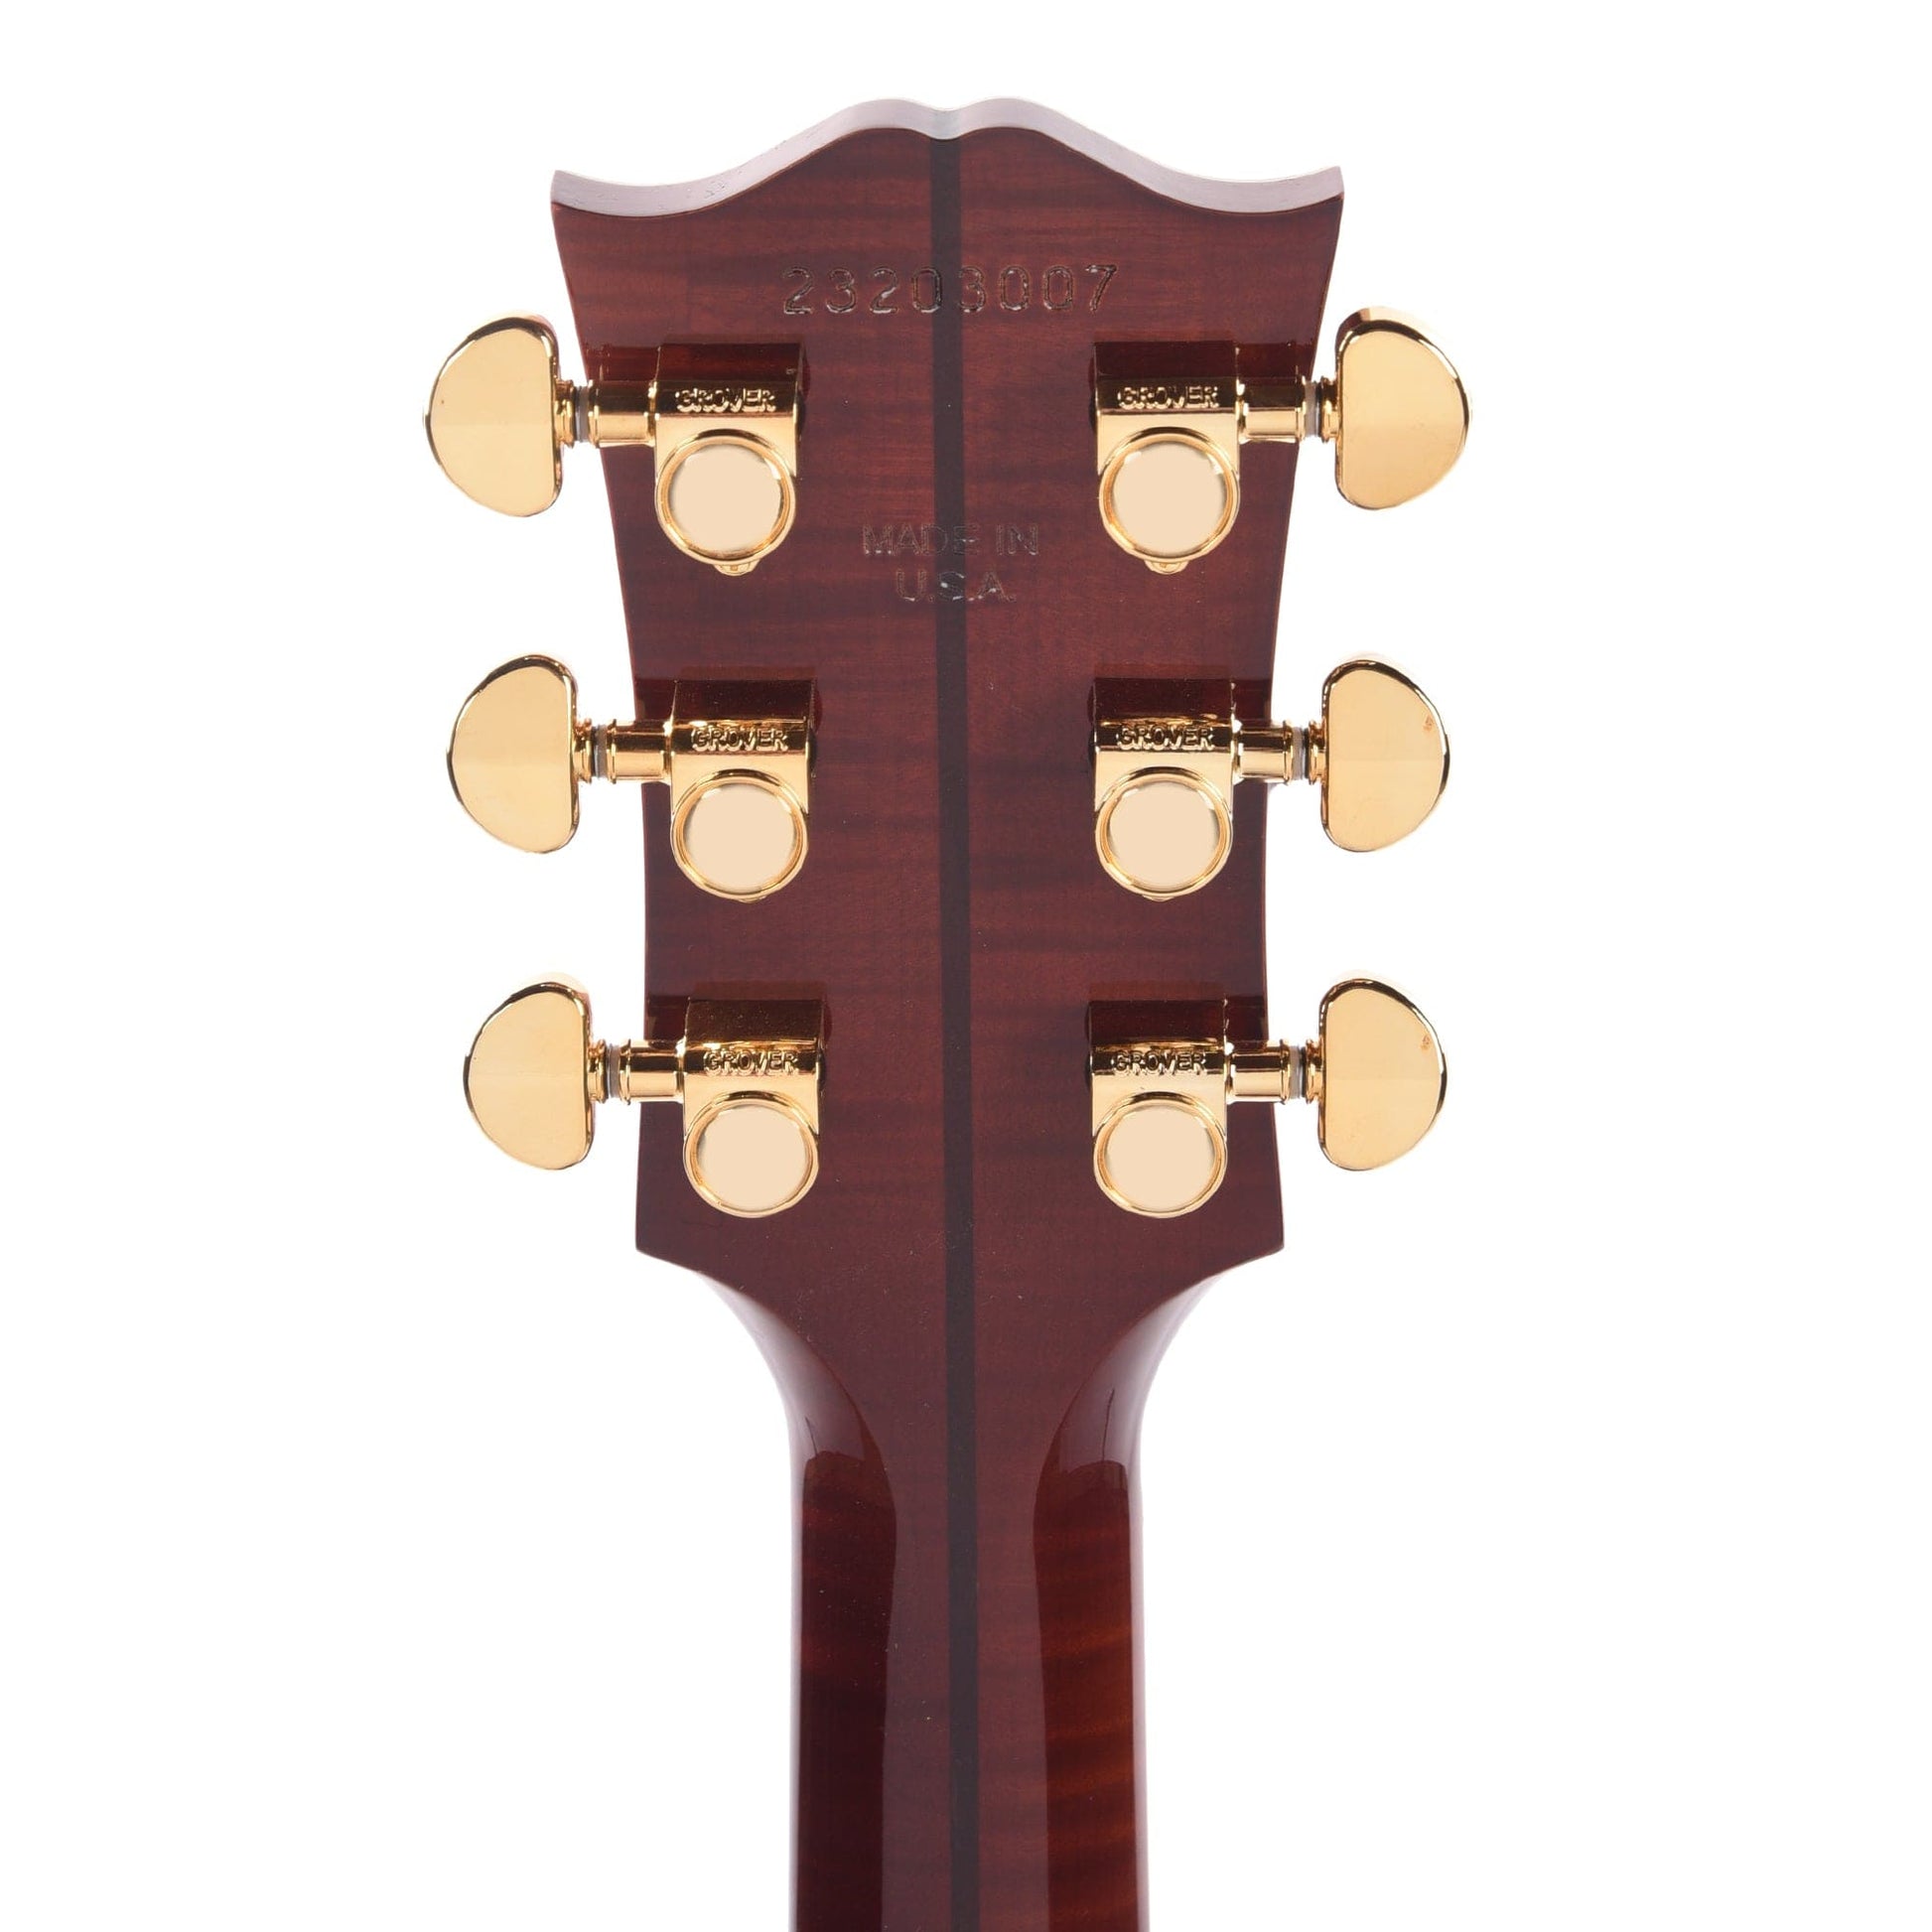 Gibson SJ-200 Standard Maple Autumnburst Acoustic Guitars / Jumbo